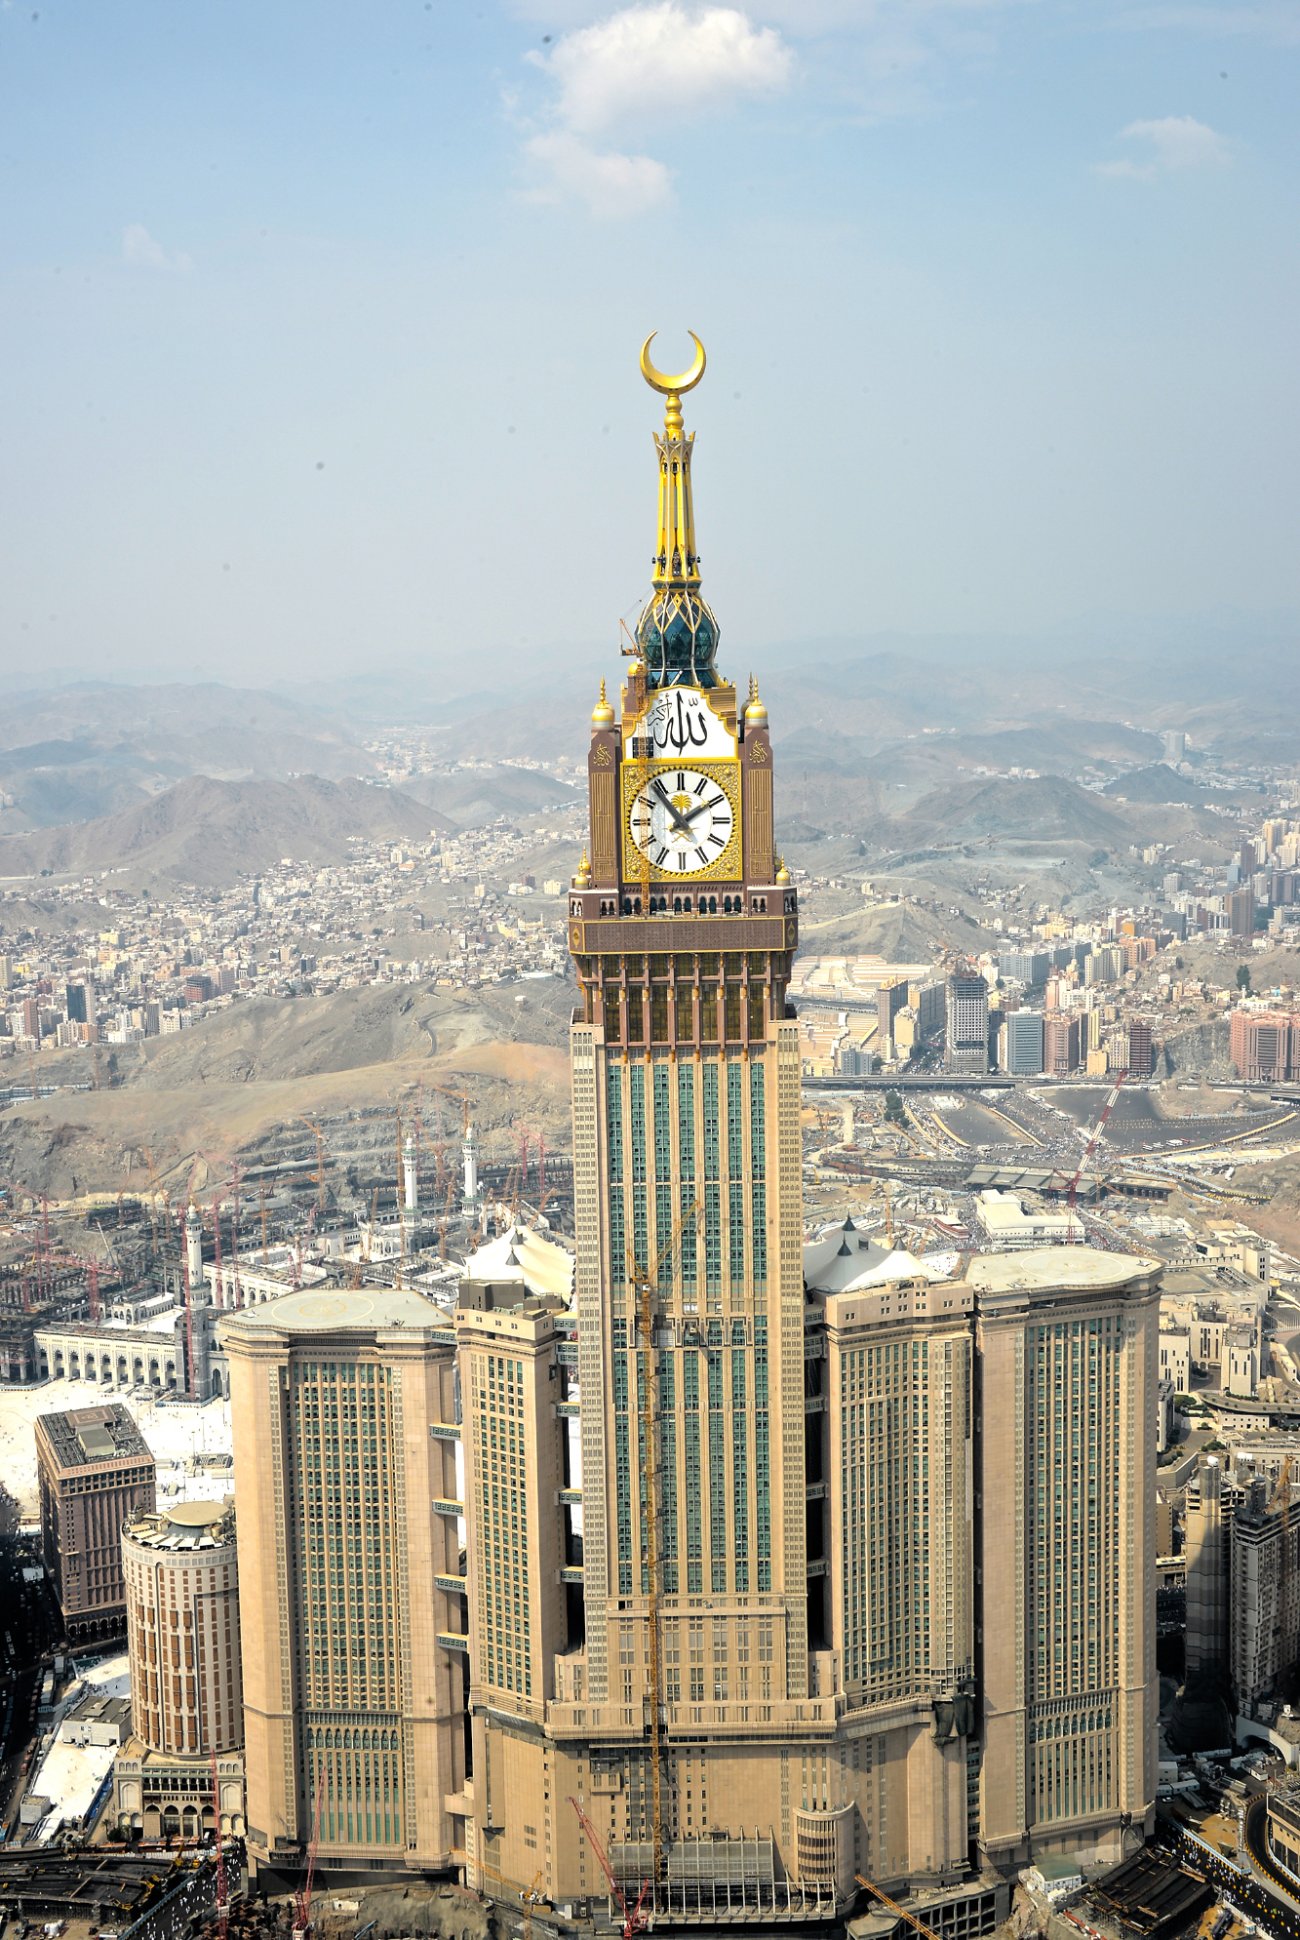 وقْف الملك عبدالعزيز للحرمين الشريفين.. من أضخم المباني في العالم